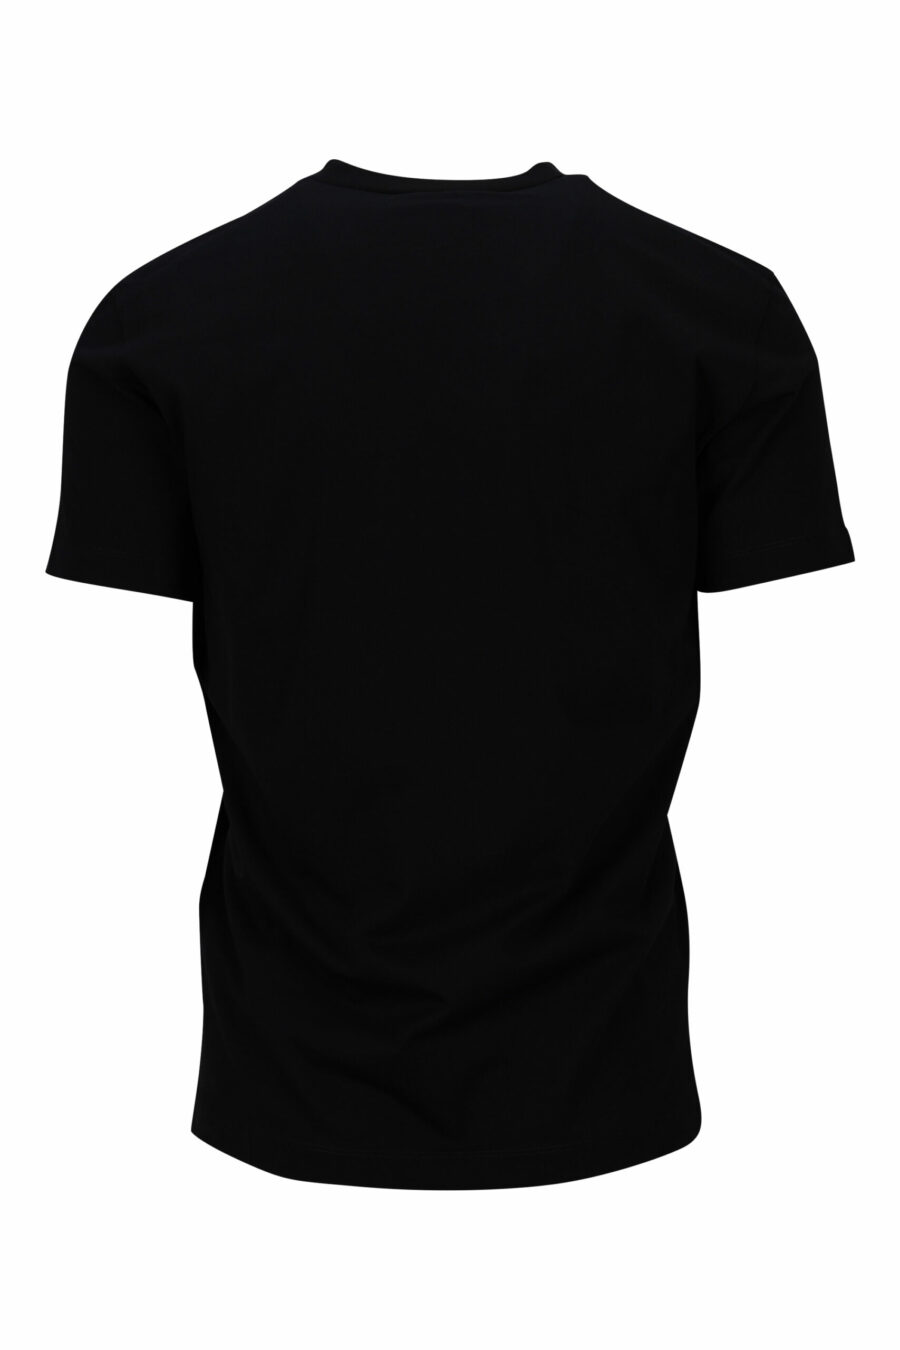 T-shirt preta com maxilogo "ceresio 9 milano" - 8054148504984 1 scaled